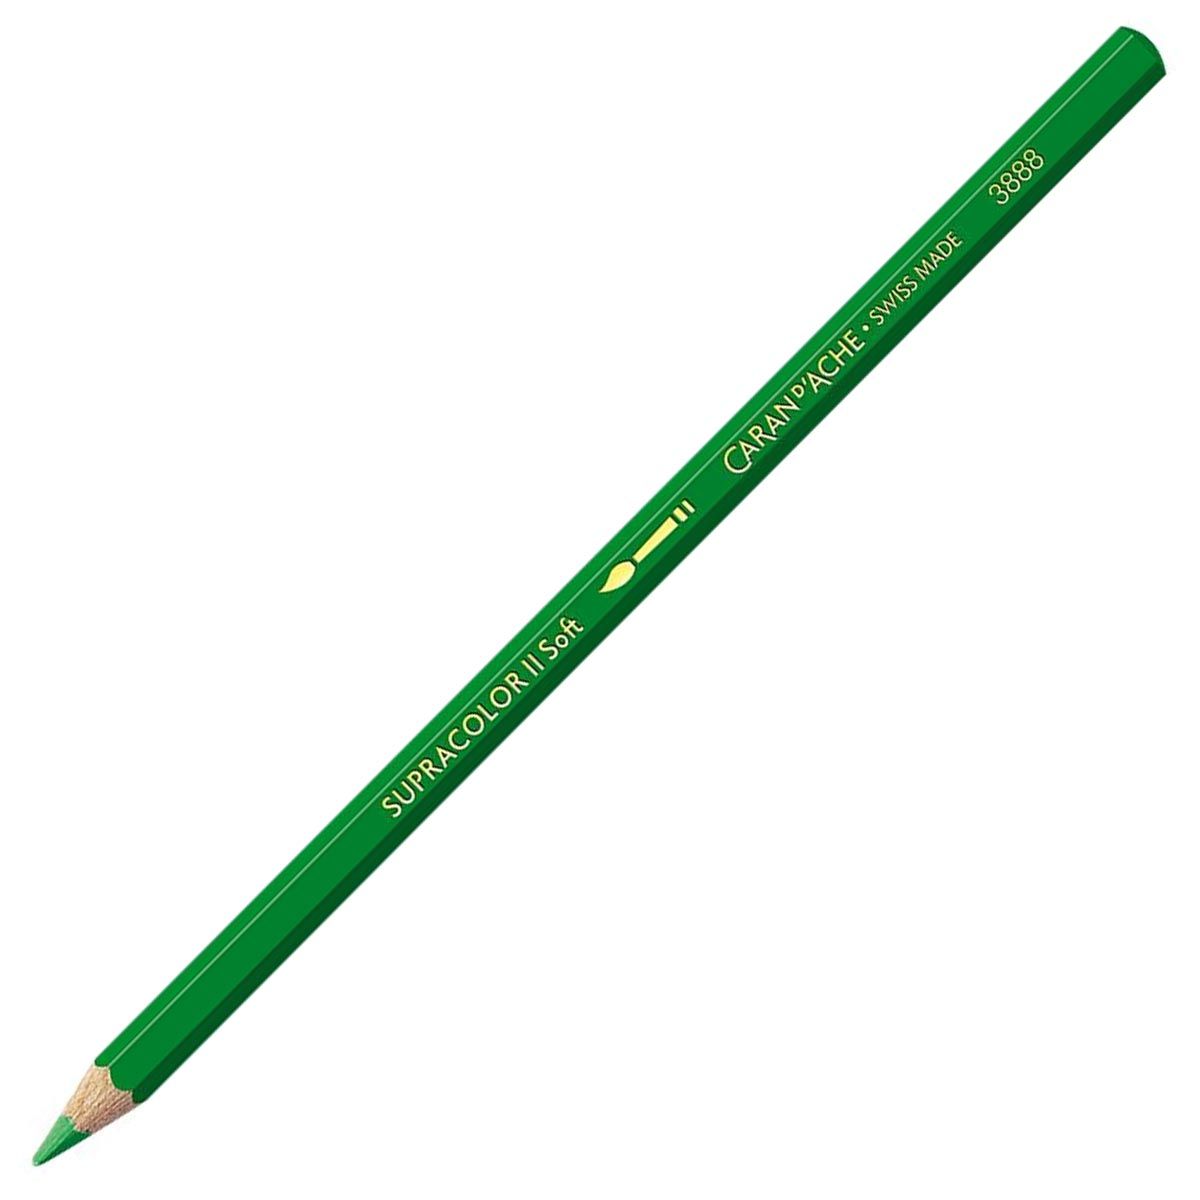 Caran d'Ache Supracolor ll Soft Aquarelle Pencil - Grass Green 220